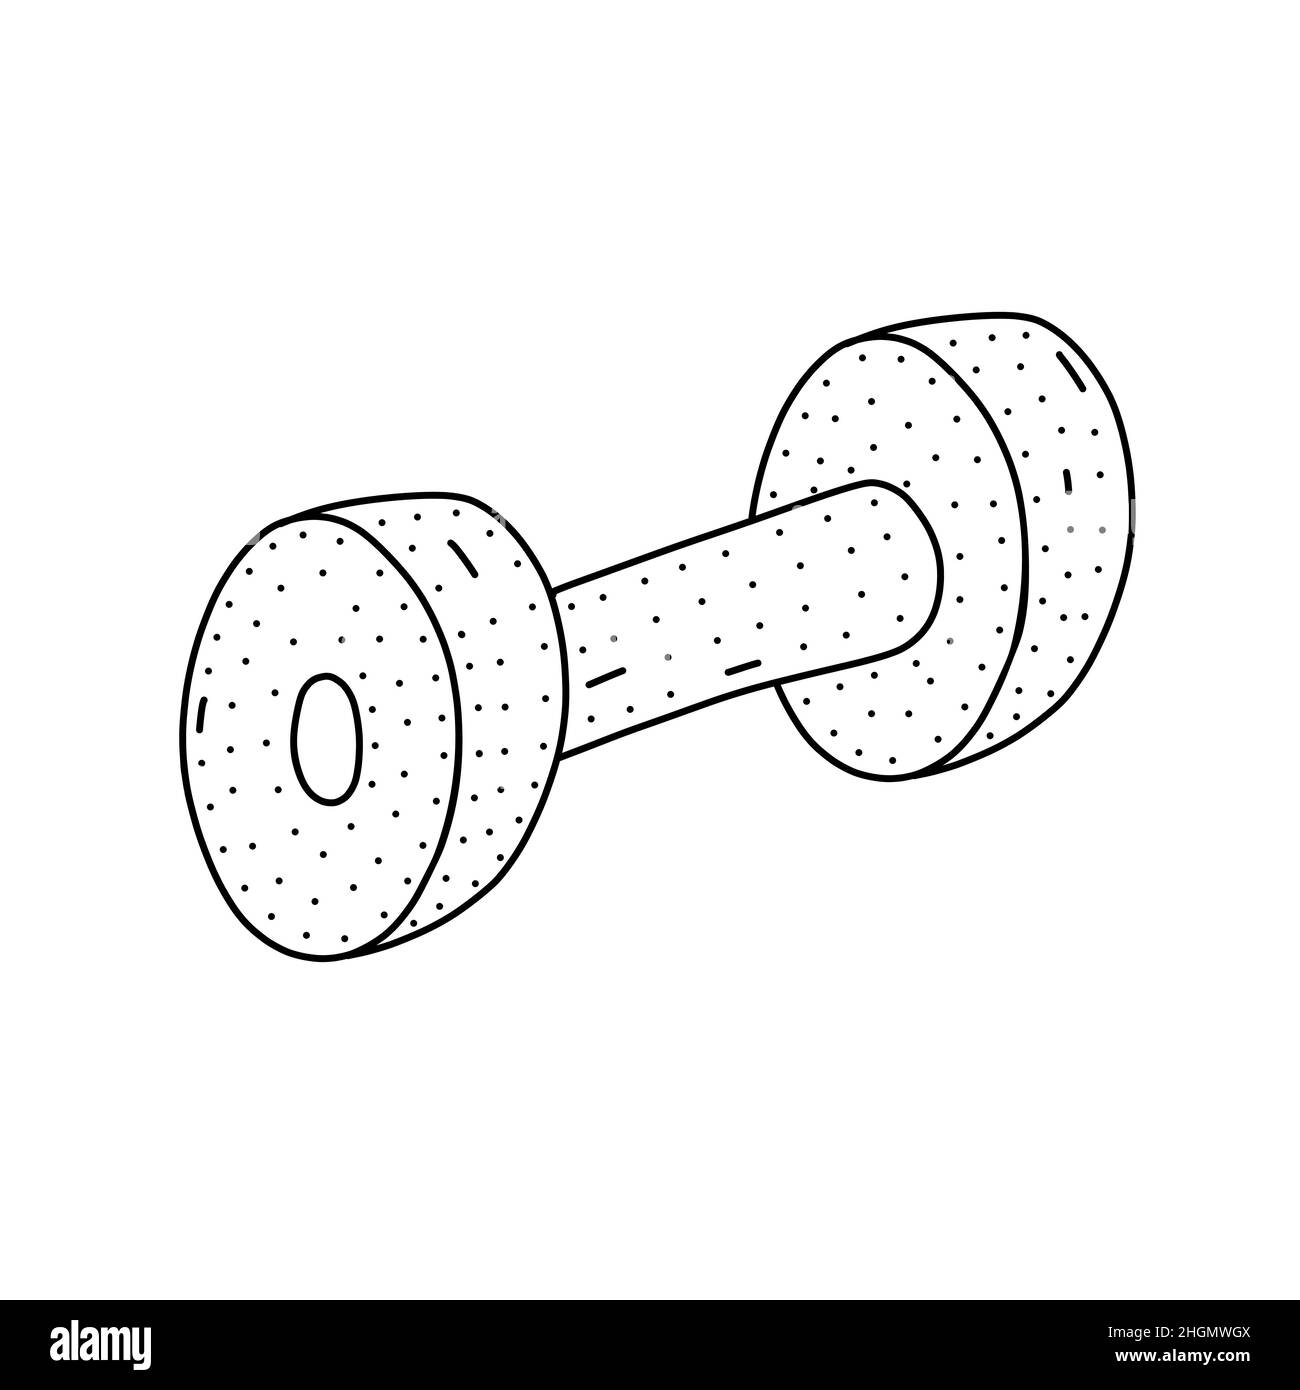 Handgezeichnetes Gewichtssymbol im Doodle-Stil. Digitales Sportelement. Illustration für Webdesign Stock Vektor